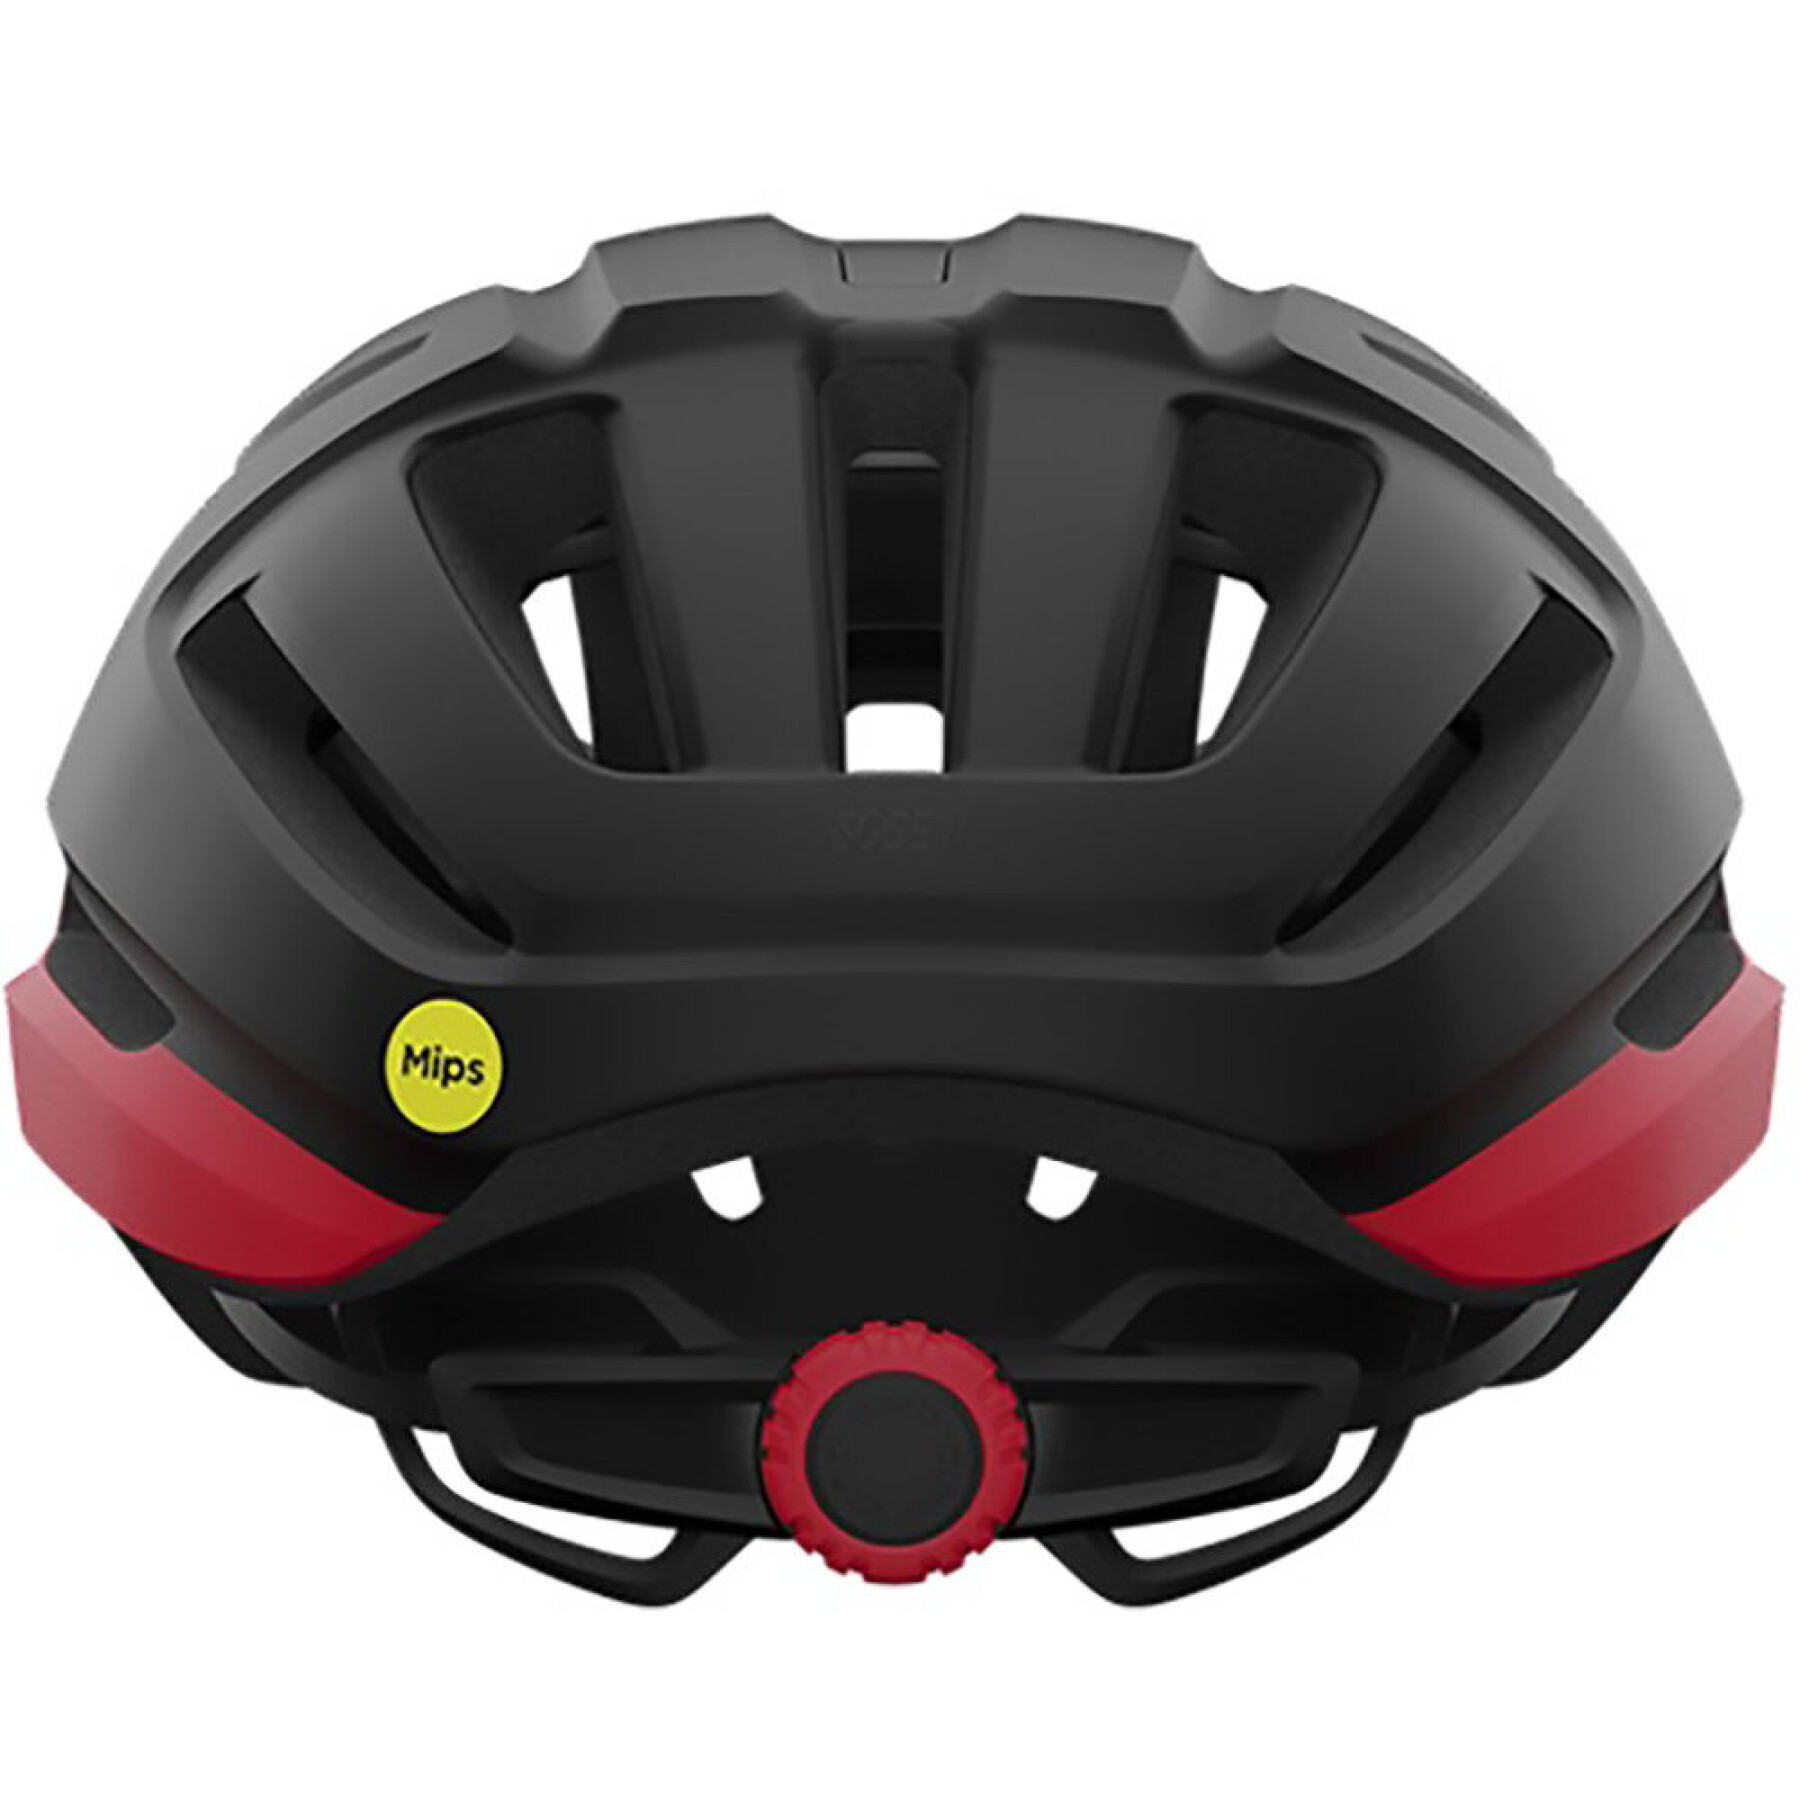 Road helmet Giro Isode MIPS II